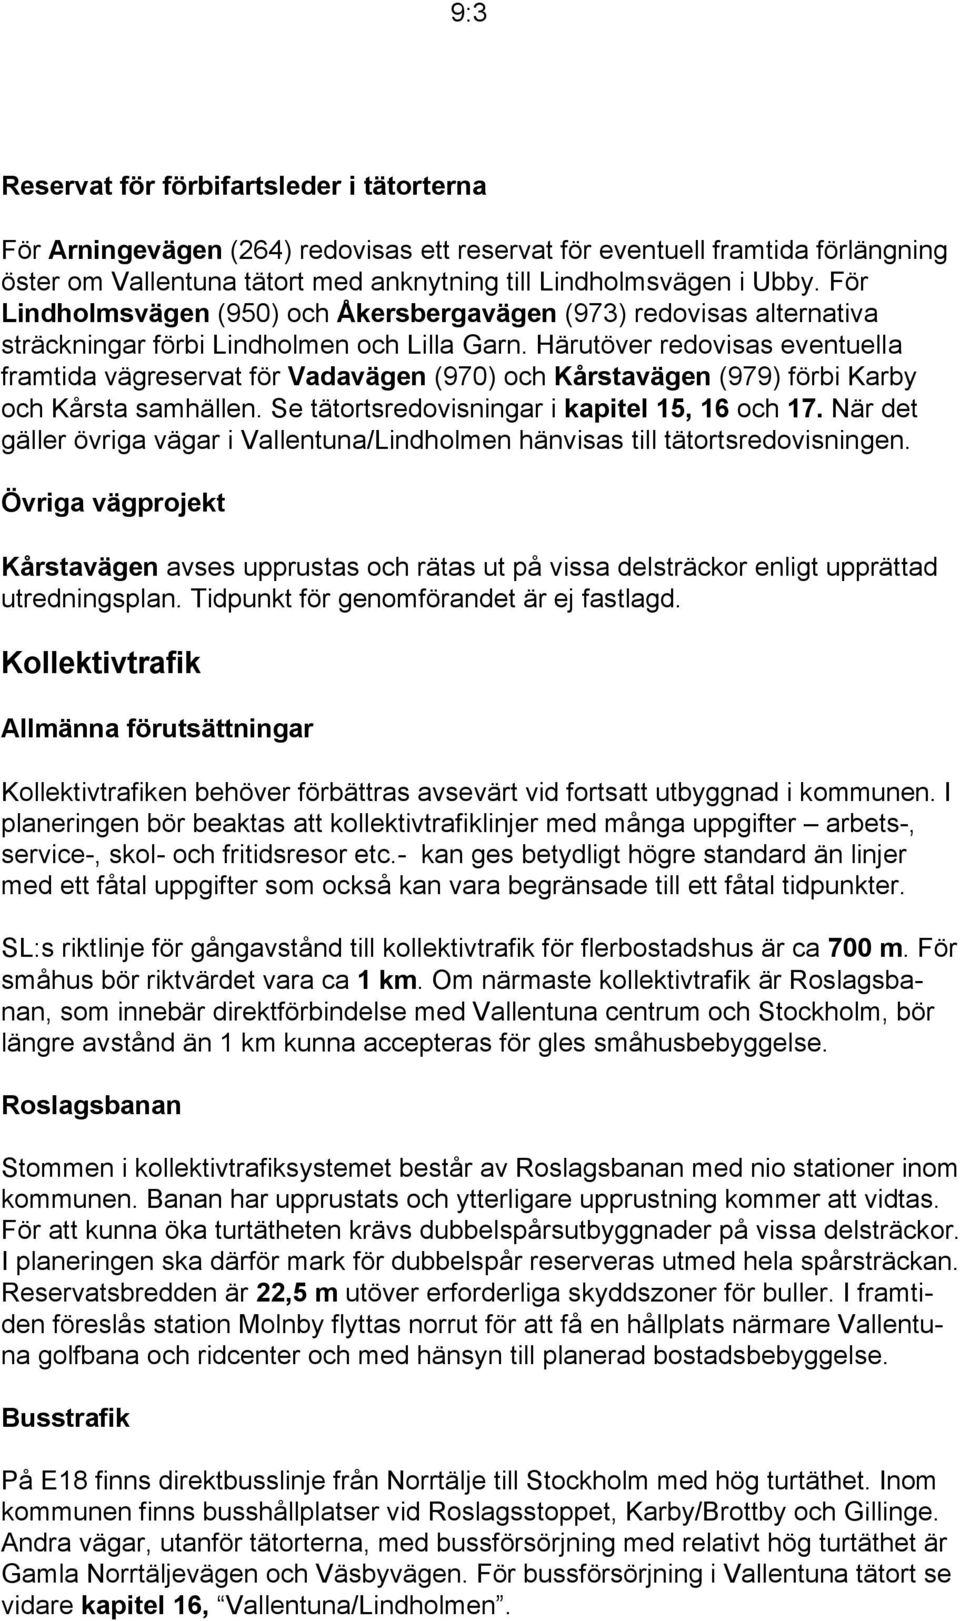 Härutöver redovisas eventuella framtida vägreservat för Vadavägen (970) och Kårstavägen (979) förbi Karby och Kårsta samhällen. Se tätortsredovisningar i kapitel 15, 16 och 17.